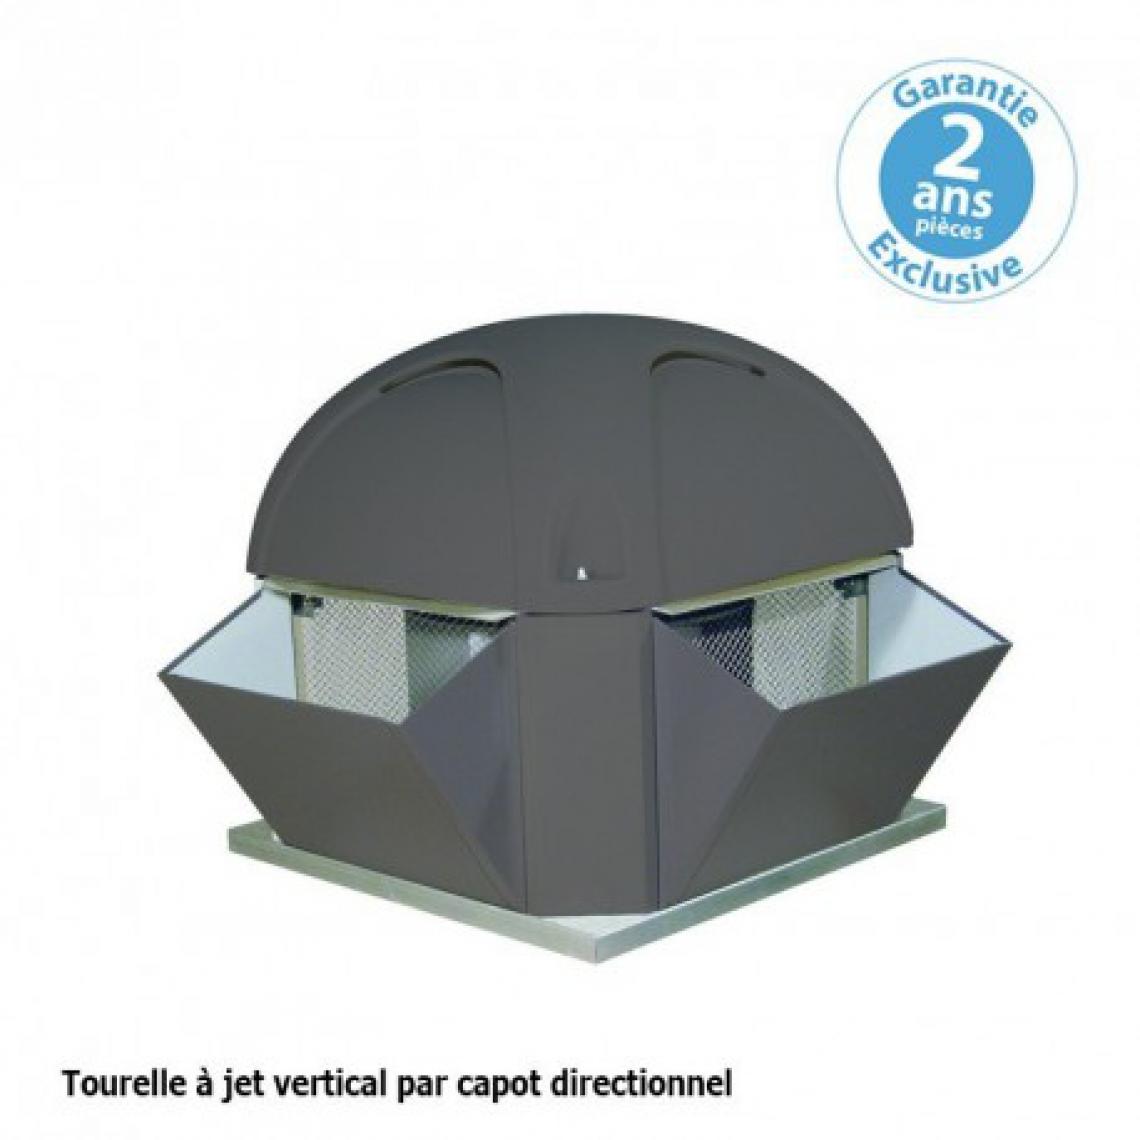 Furnotel - Tourelle 1 vitesse - triphasée - refoulement vertical - 8000 m³ / h sous 220 Pa - - VMC, Ventilation